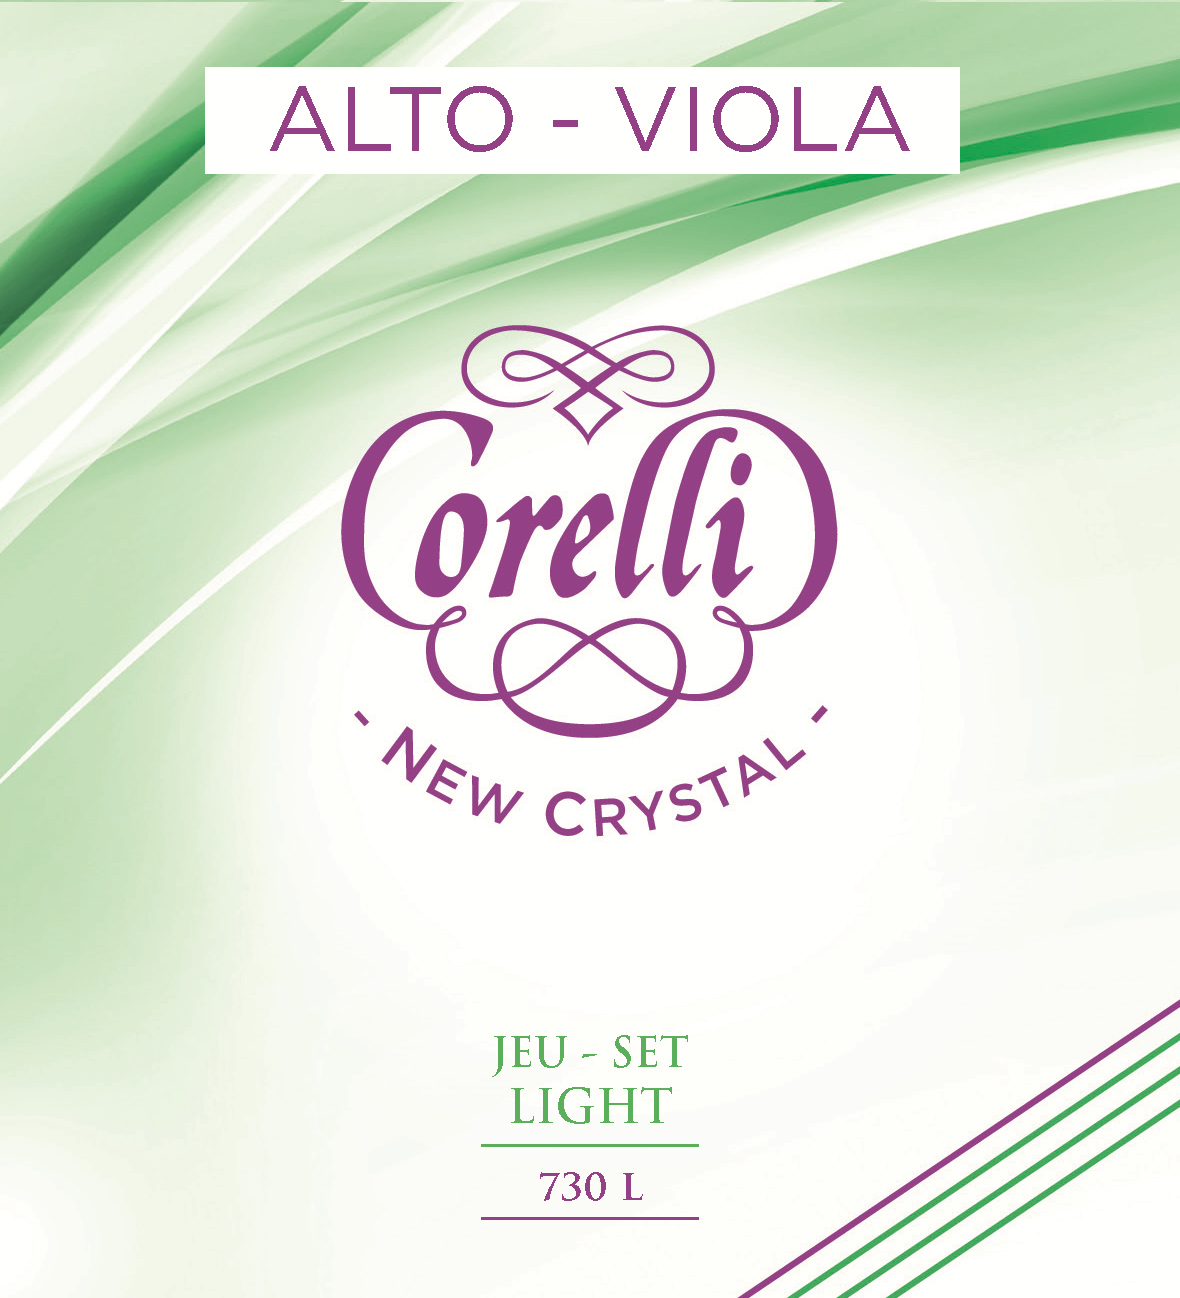 CORELLI NEW CRYSTAL LIGHT 730L VIOLA